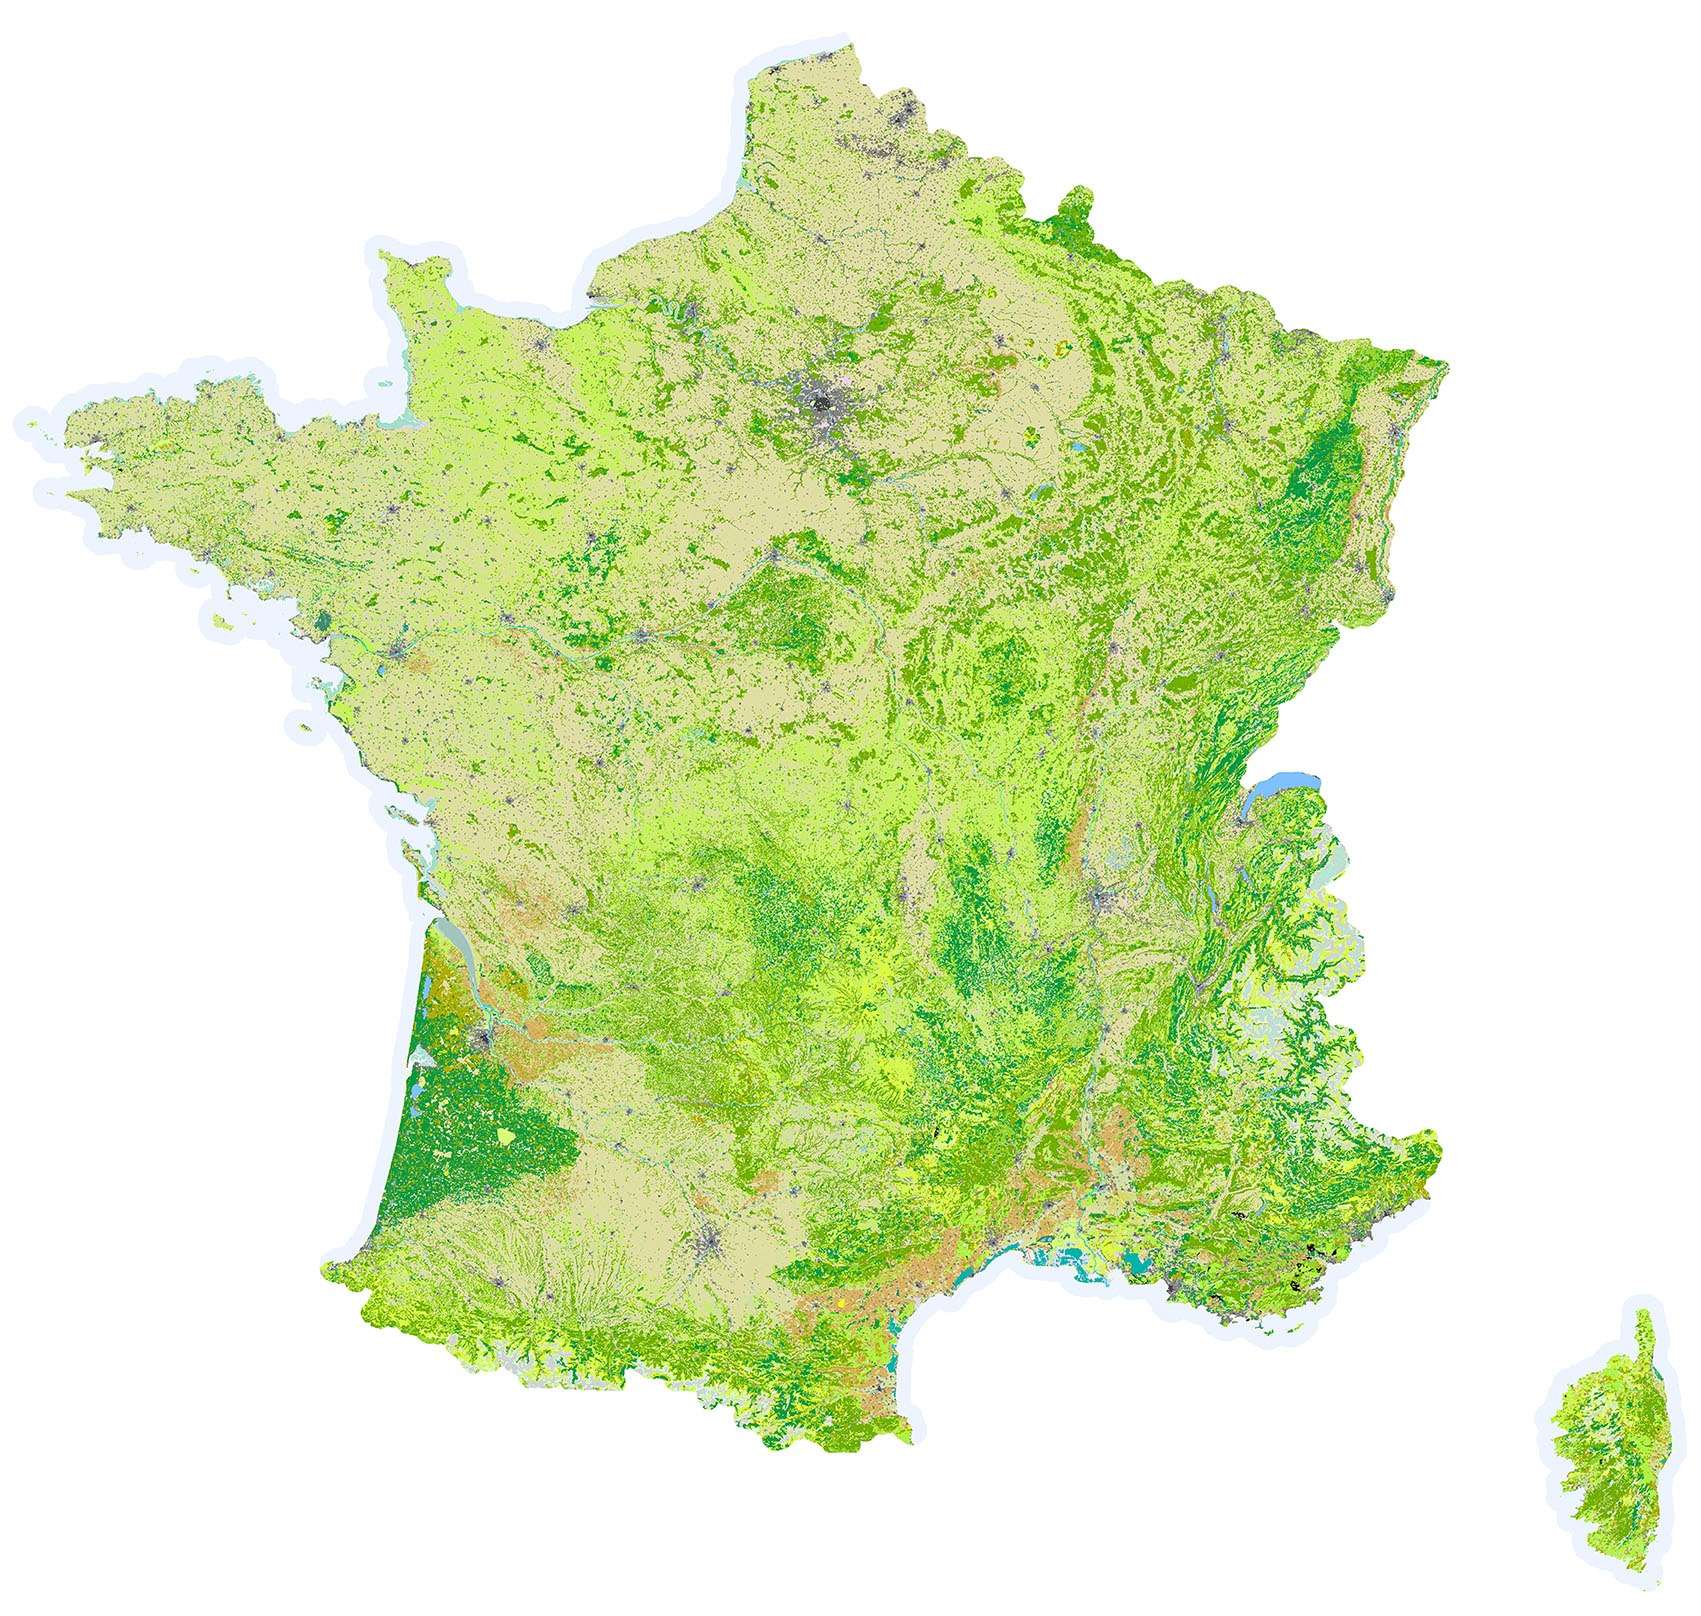 Occupation du sol SD France - Guillaume Sciaux - Cartographe professionnel